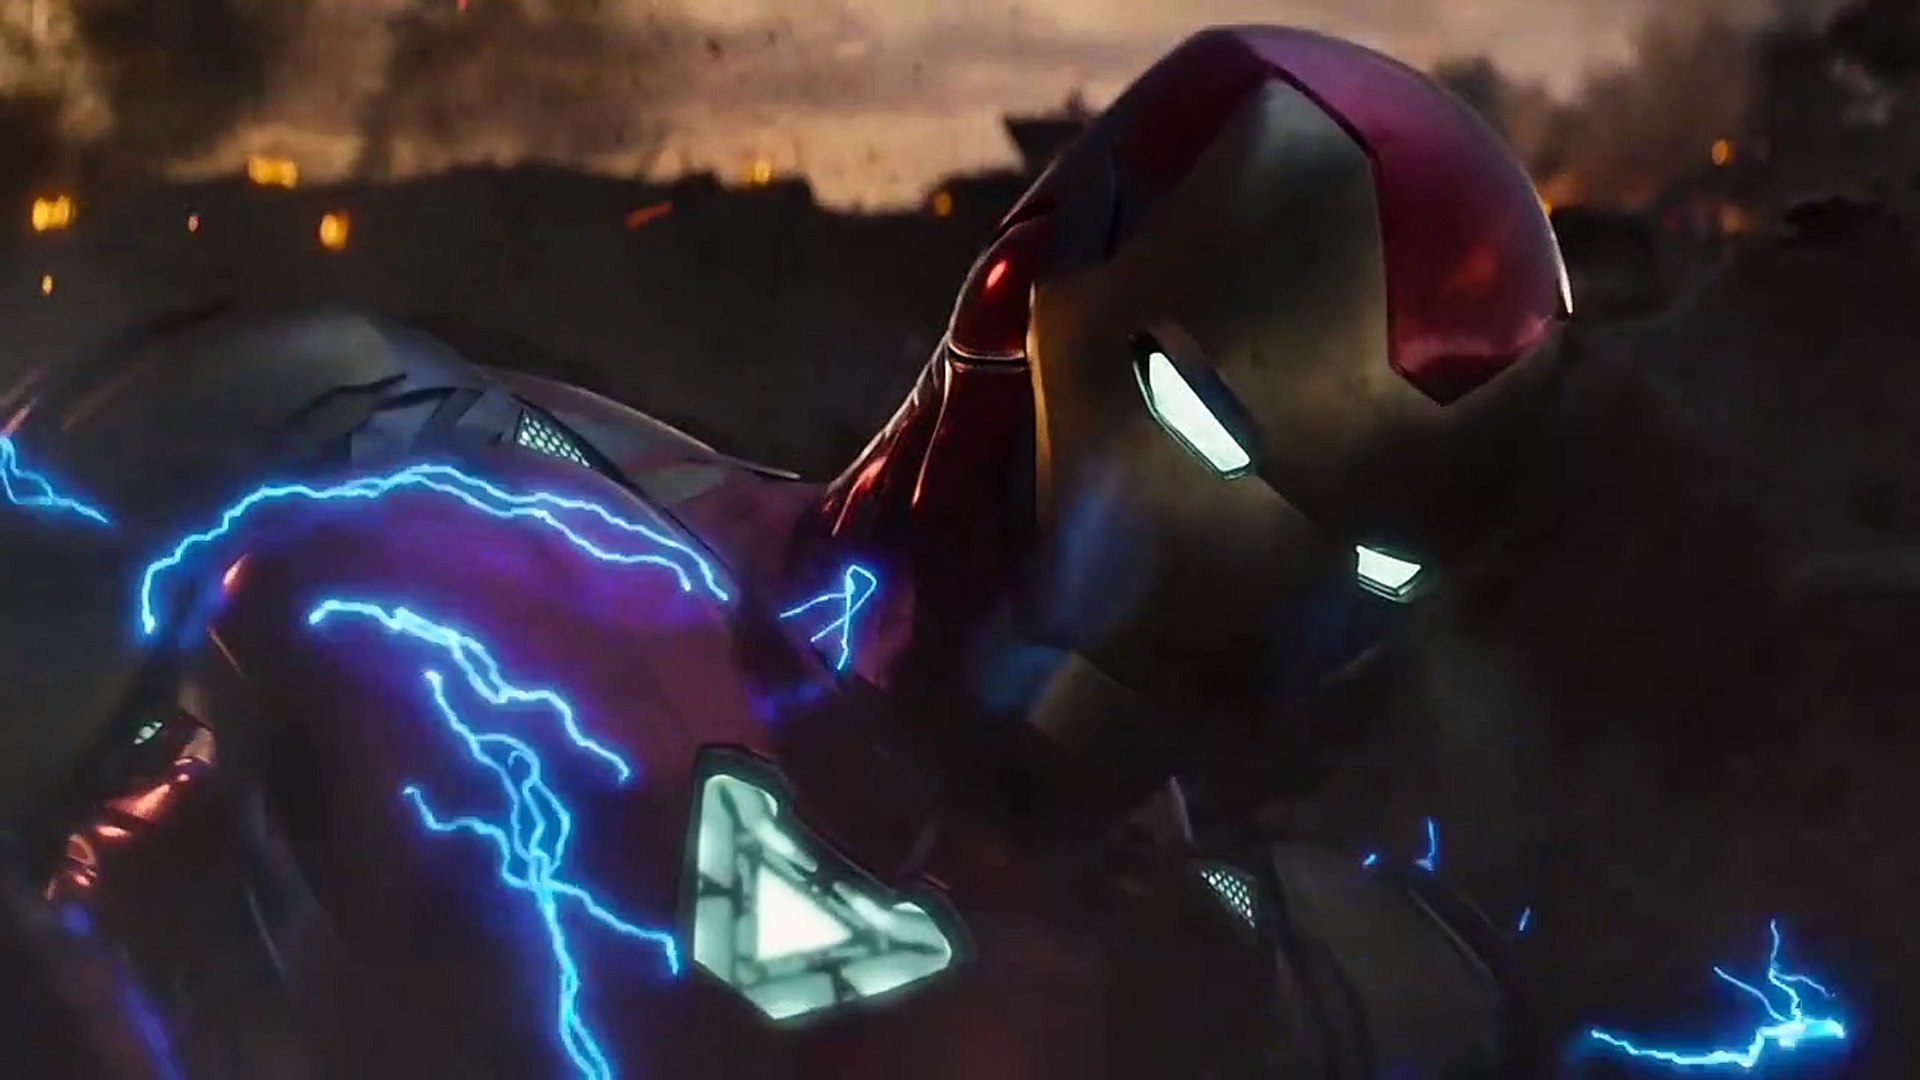 Captain America vs Thanos Fight Scene - Captain America Lifts Mjolnir -  Avengers_ Endgame (2019) - video Dailymotion